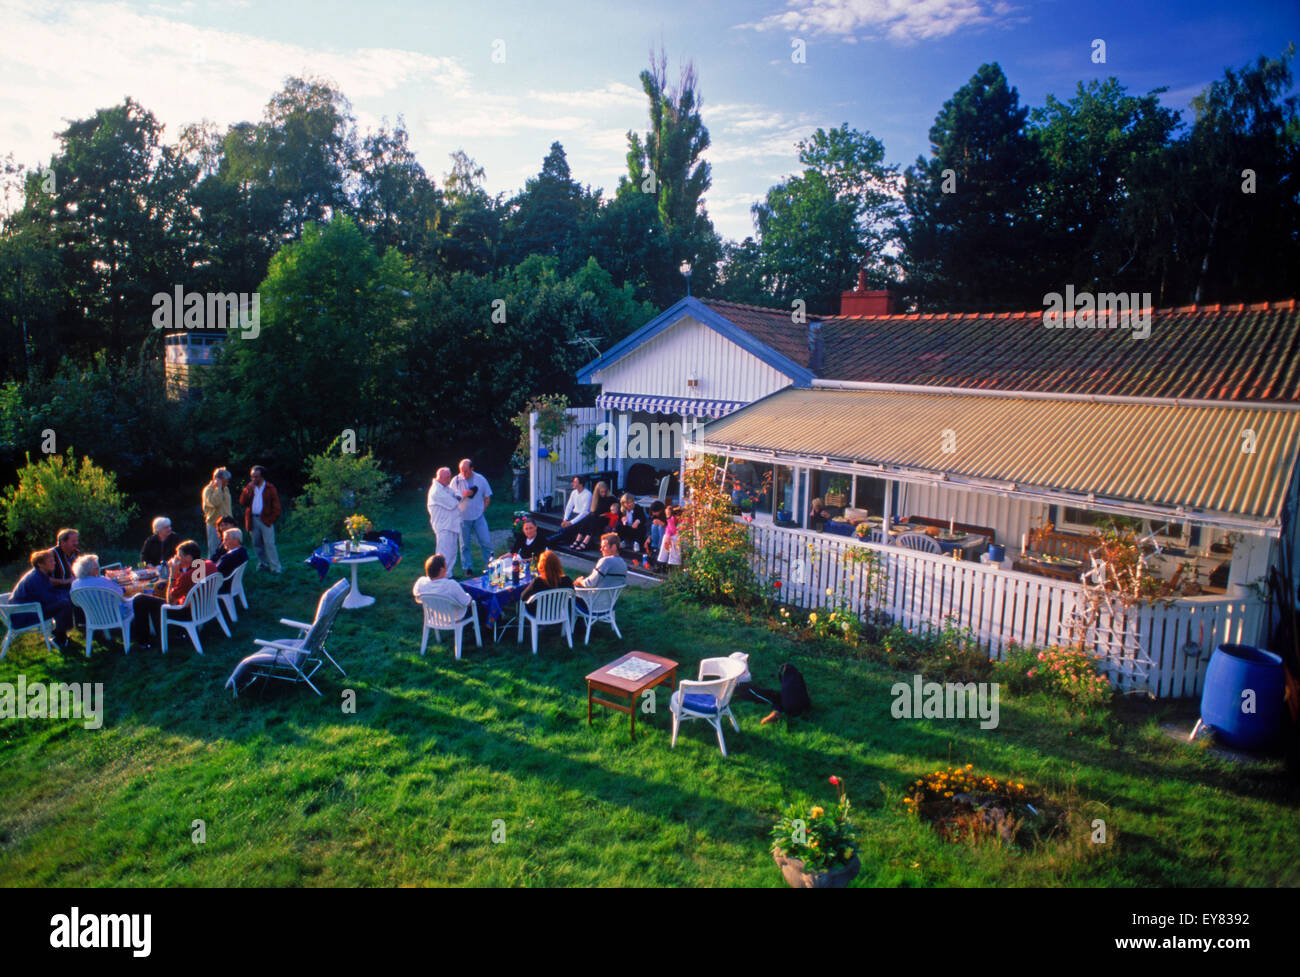 Freunden teilen, Essen, Kaffee und Gespräch am Sommerhaus auf Tranholmen Insel in Stockholm Archipealgo in den Gewässern der Ostsee Stockfoto